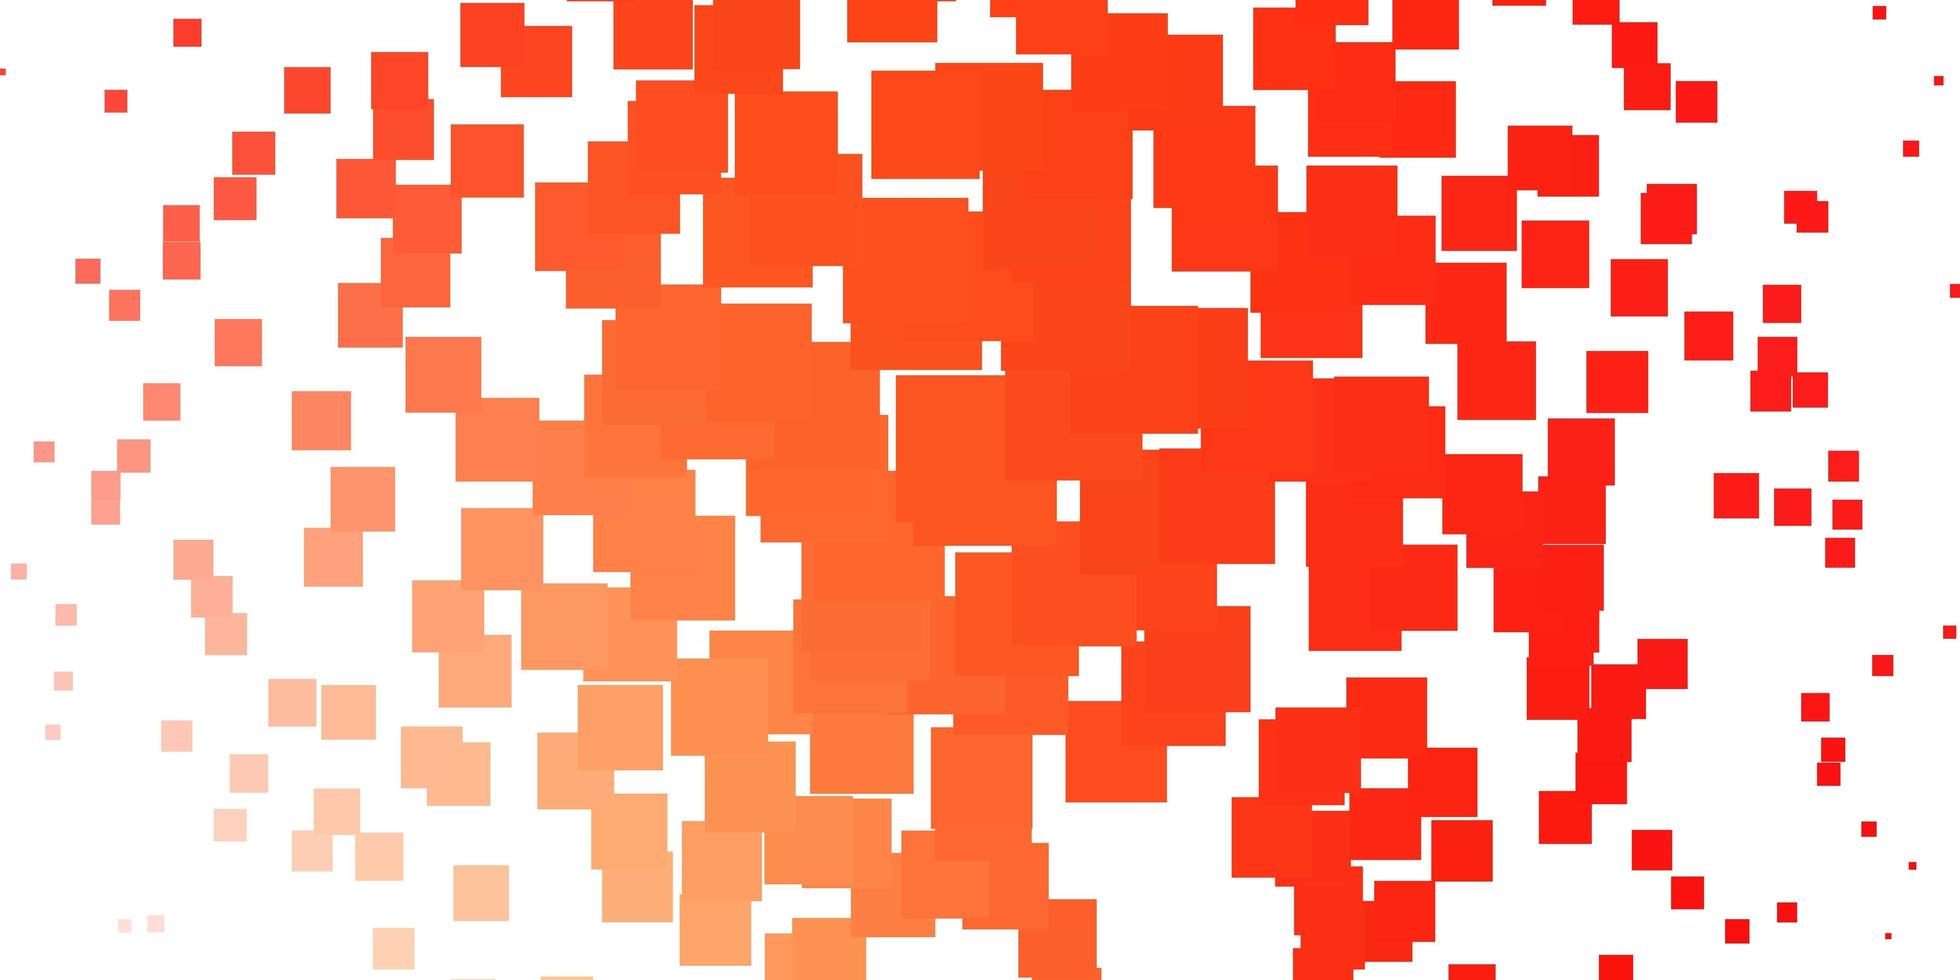 pano de fundo de vetor vermelho amarelo claro com retângulos ilustração gradiente abstrata com modelo de retângulos coloridos para celulares